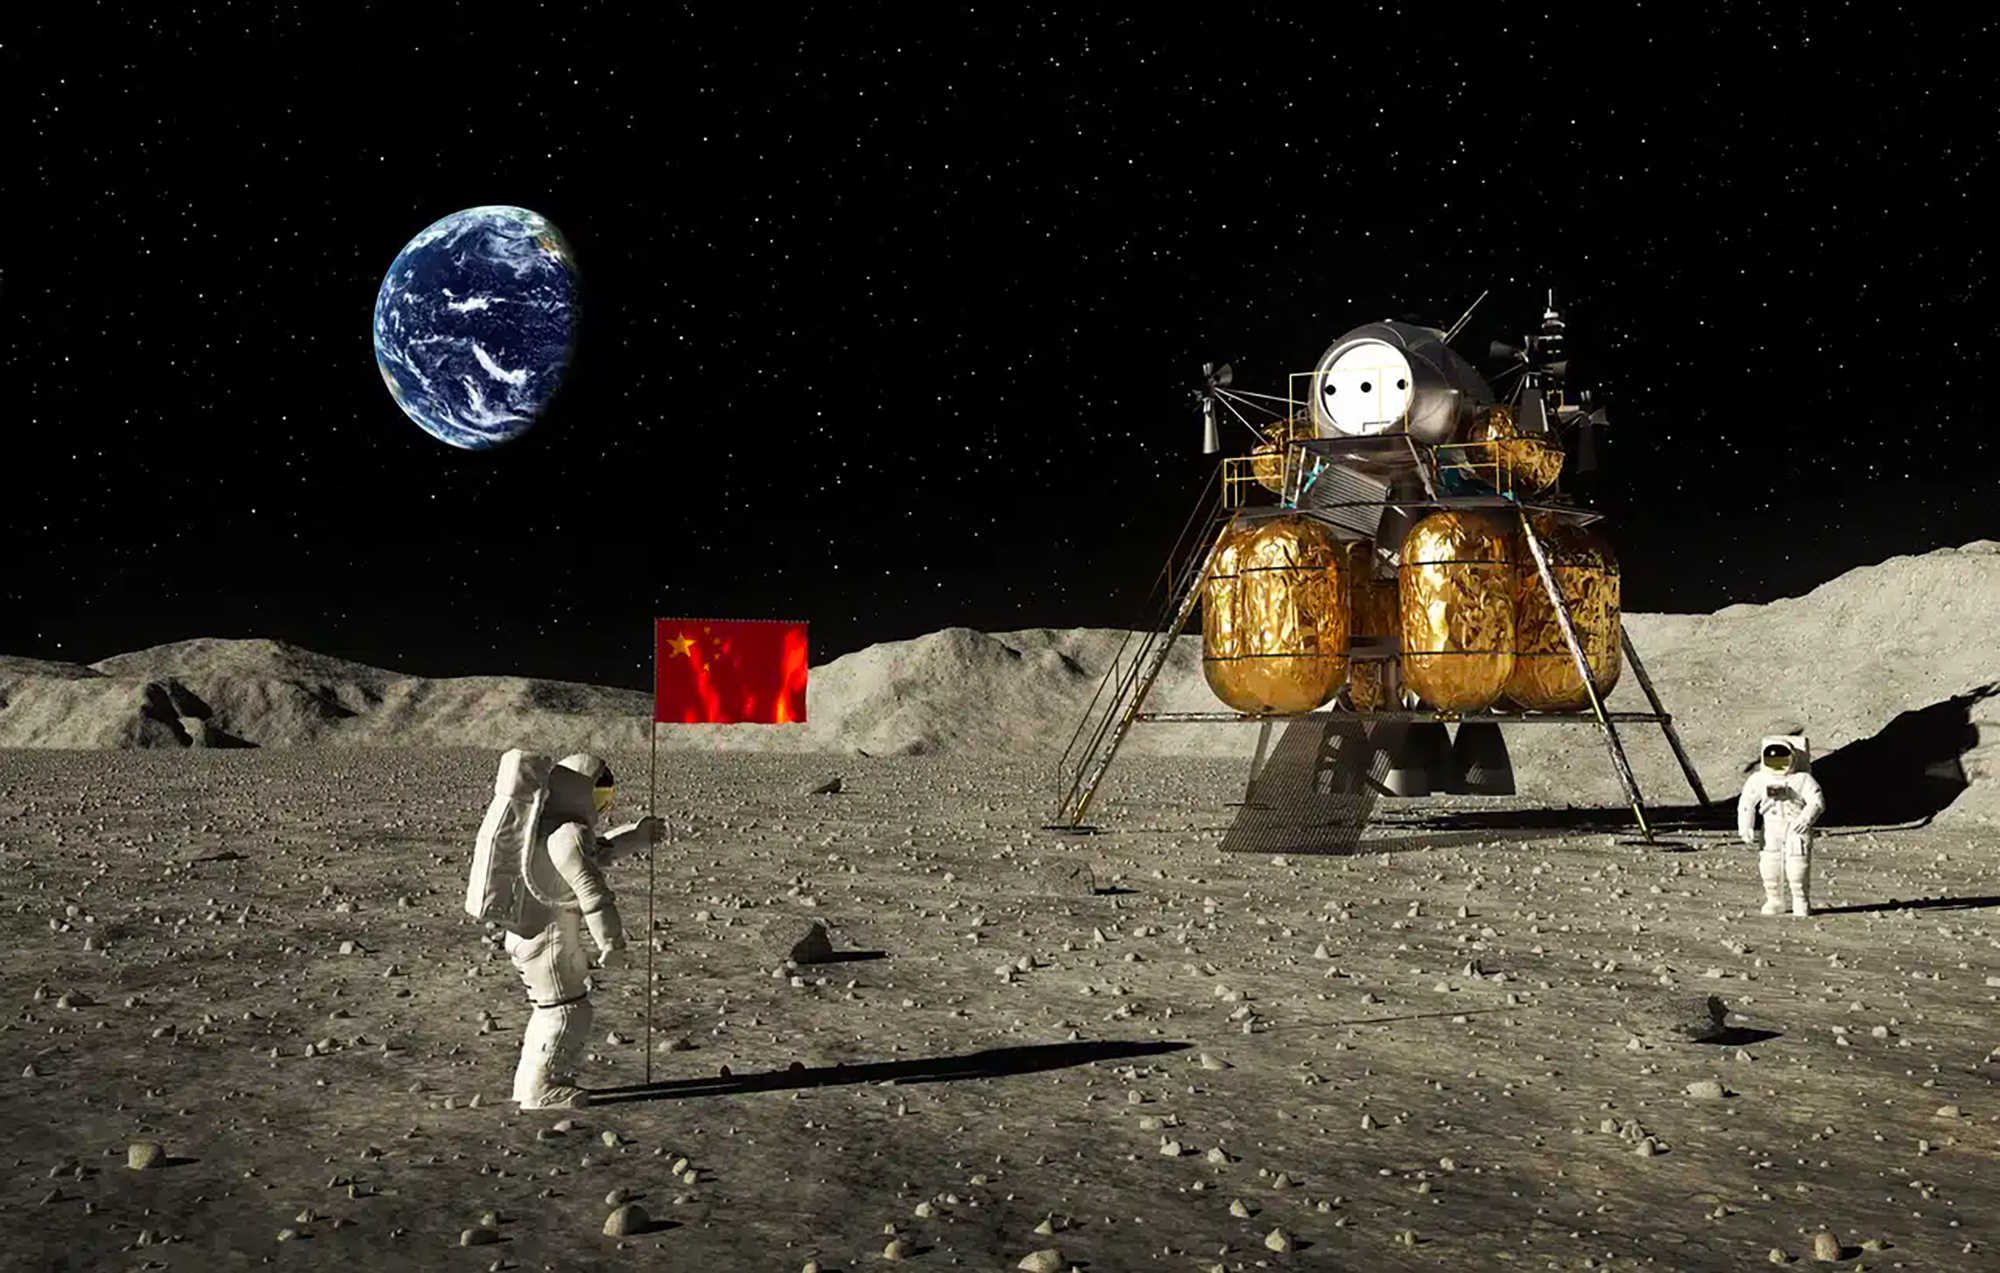 Vue d'artiste d'une mission chinoise sur la Lune. © 3DSculptor, iStock